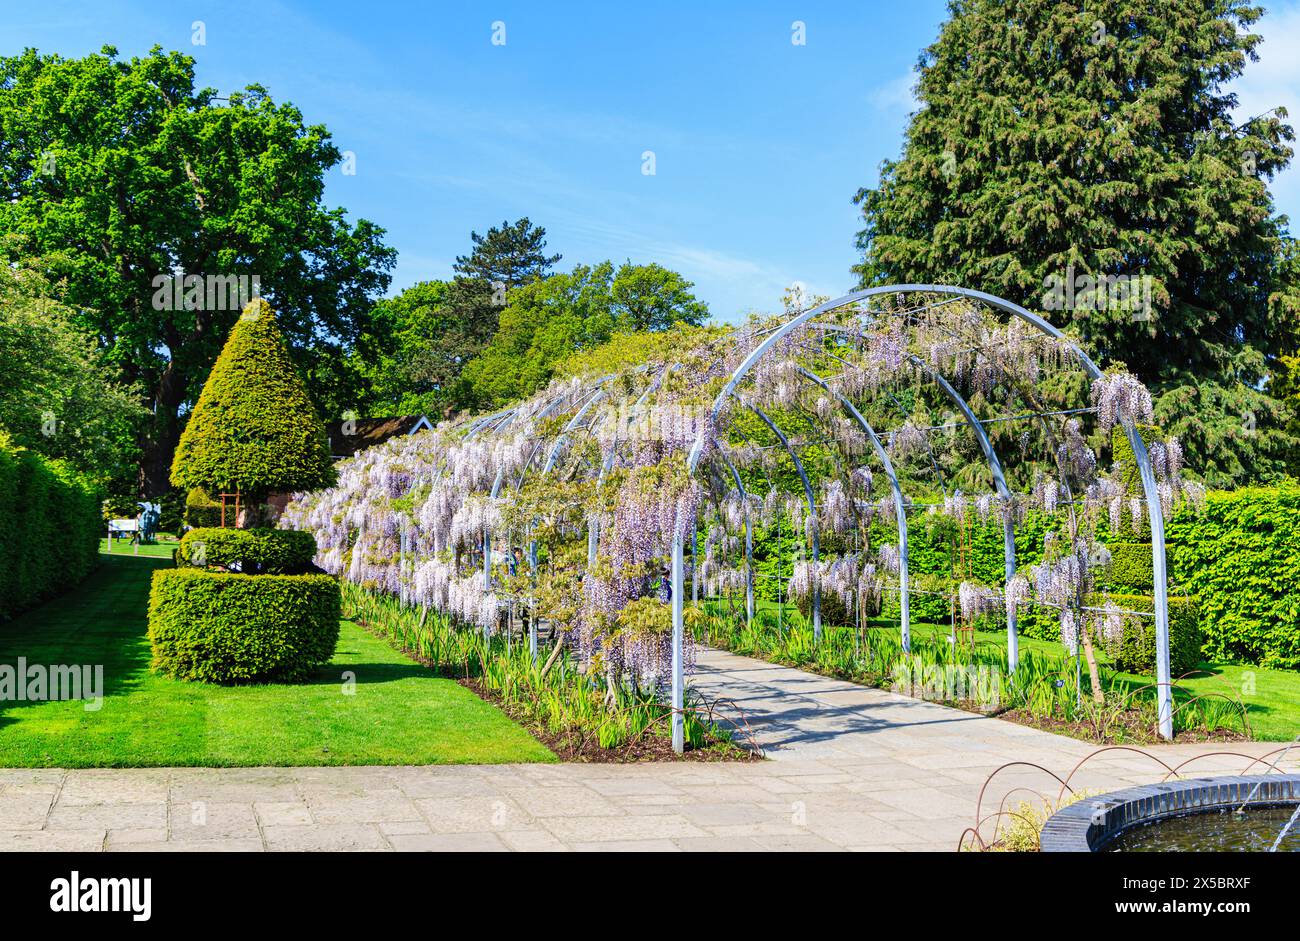 Wunderschöner malvenfarbener Glyzinien-Bogen (Wisteria Kokuryu) blüht im Frühjahr im RHS Garden, Wisley, Surrey, Südosten Englands Stockfoto